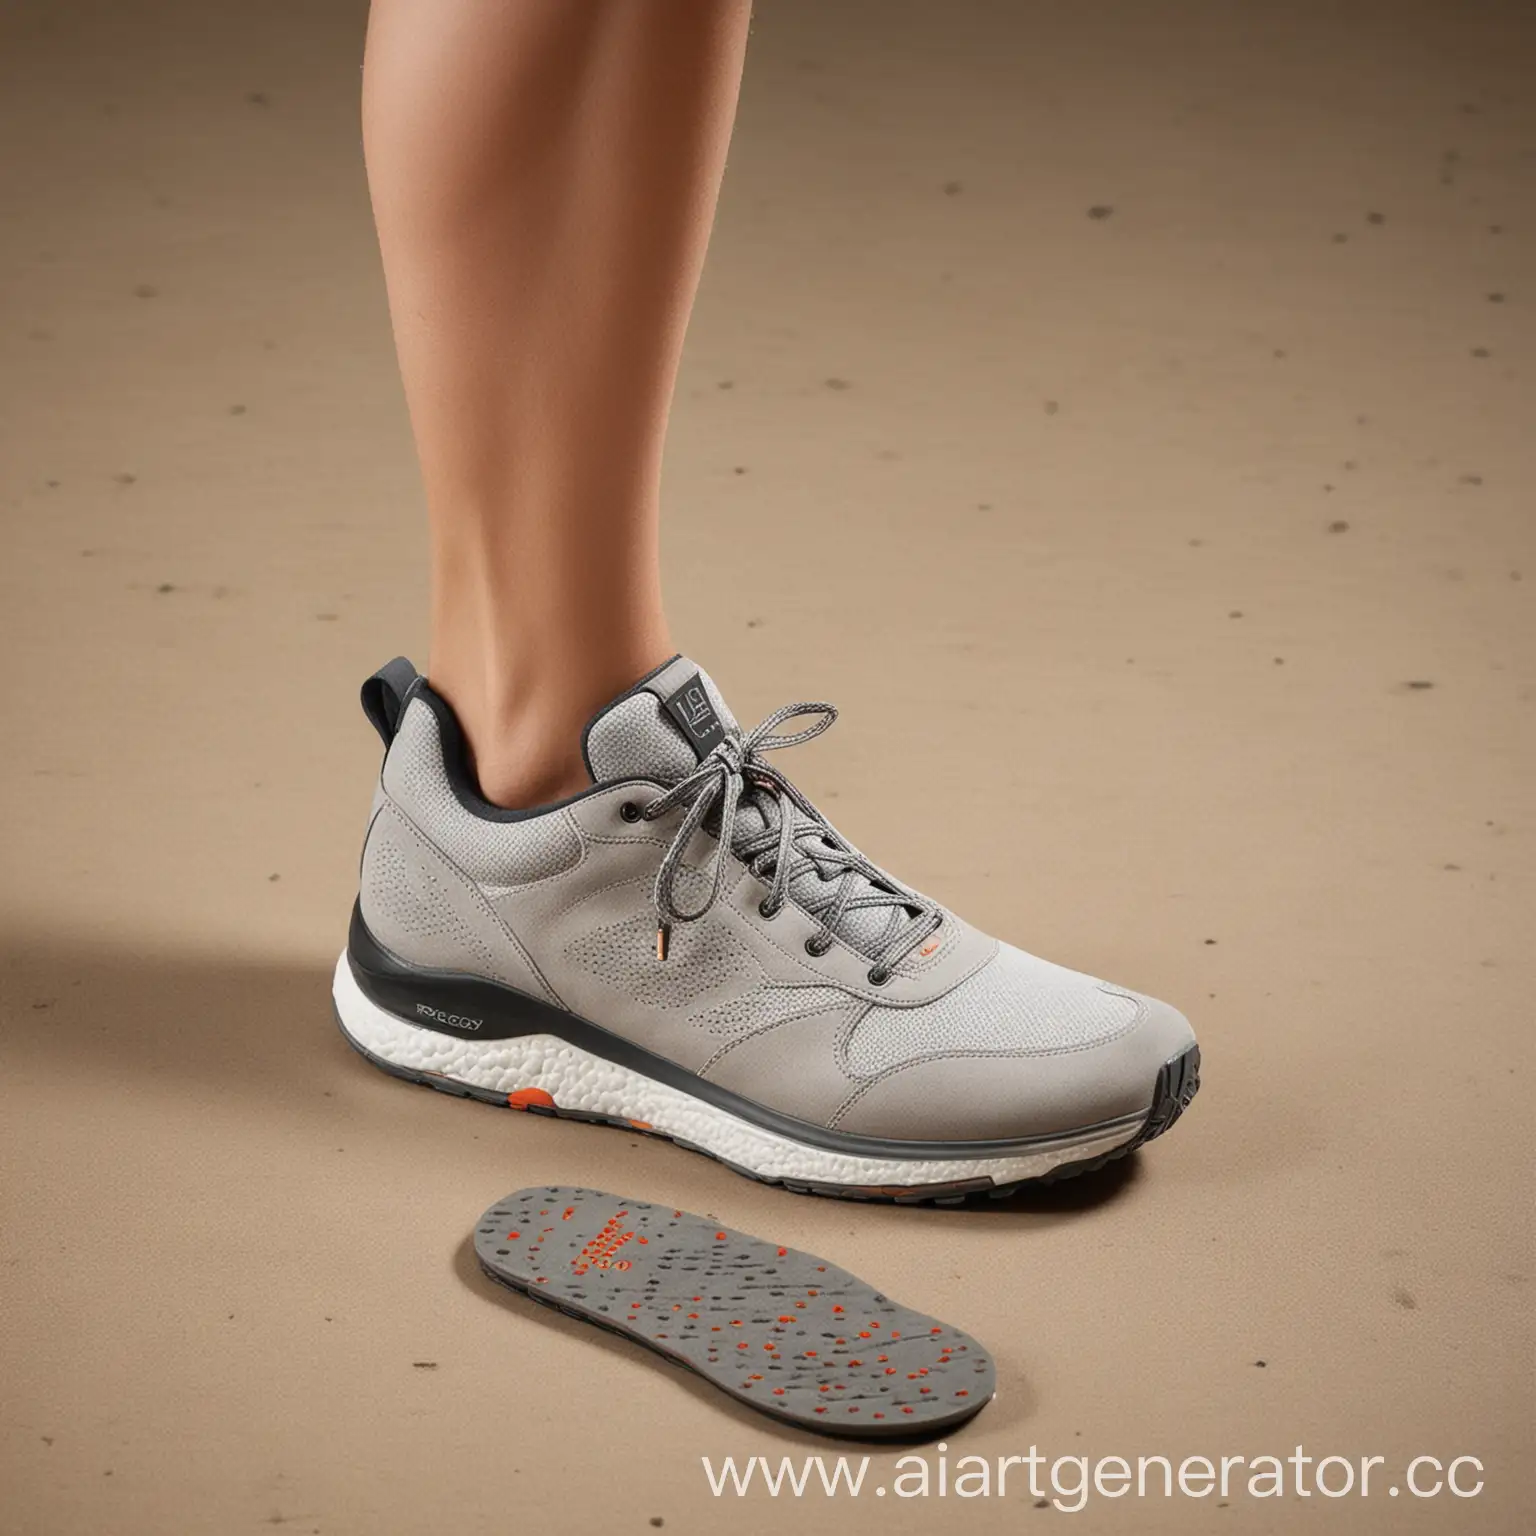 GEOX Smart Comfort — это инновационная линейка обуви, которая сочетает в себе передовые технологии, экологичность и модный дизайн. Основной особенностью этой линейки станет интеграция умных технологий, обеспечивающих максимальный комфорт и здоровье ног, а также уникальные экологичные материалы, что поддерживает современный тренд на устойчивое развитие.

Основные компоненты включают умные стельки с встроенными датчиками давления и движения, которые анализируют походку, распределение давления и уровень активности пользователя. Подключение к приложению позволяет давать рекомендации по улучшению походки и предупреждать о возможных проблемах с осанкой и суставами. Также стельки могут регулировать температуру для максимального комфорта в любое время года.

Экологичные материалы включают переработанные пластики и органические материалы для создания подошвы и верхней части обуви, а также биоразлагаемые компоненты, которые разлагаются без вреда для окружающей среды.

Адаптивная подошва обладает самонастраивающейся амортизацией, подстраиваясь под индивидуальные особенности походки пользователя, и повышенной износостойкостью, обеспечивая долговечность обуви при сохранении комфорта.

Персонализация дизайна позволяет изменять внешний вид обуви с помощью съемных элементов, таких как цветные вставки и декоративные детали.